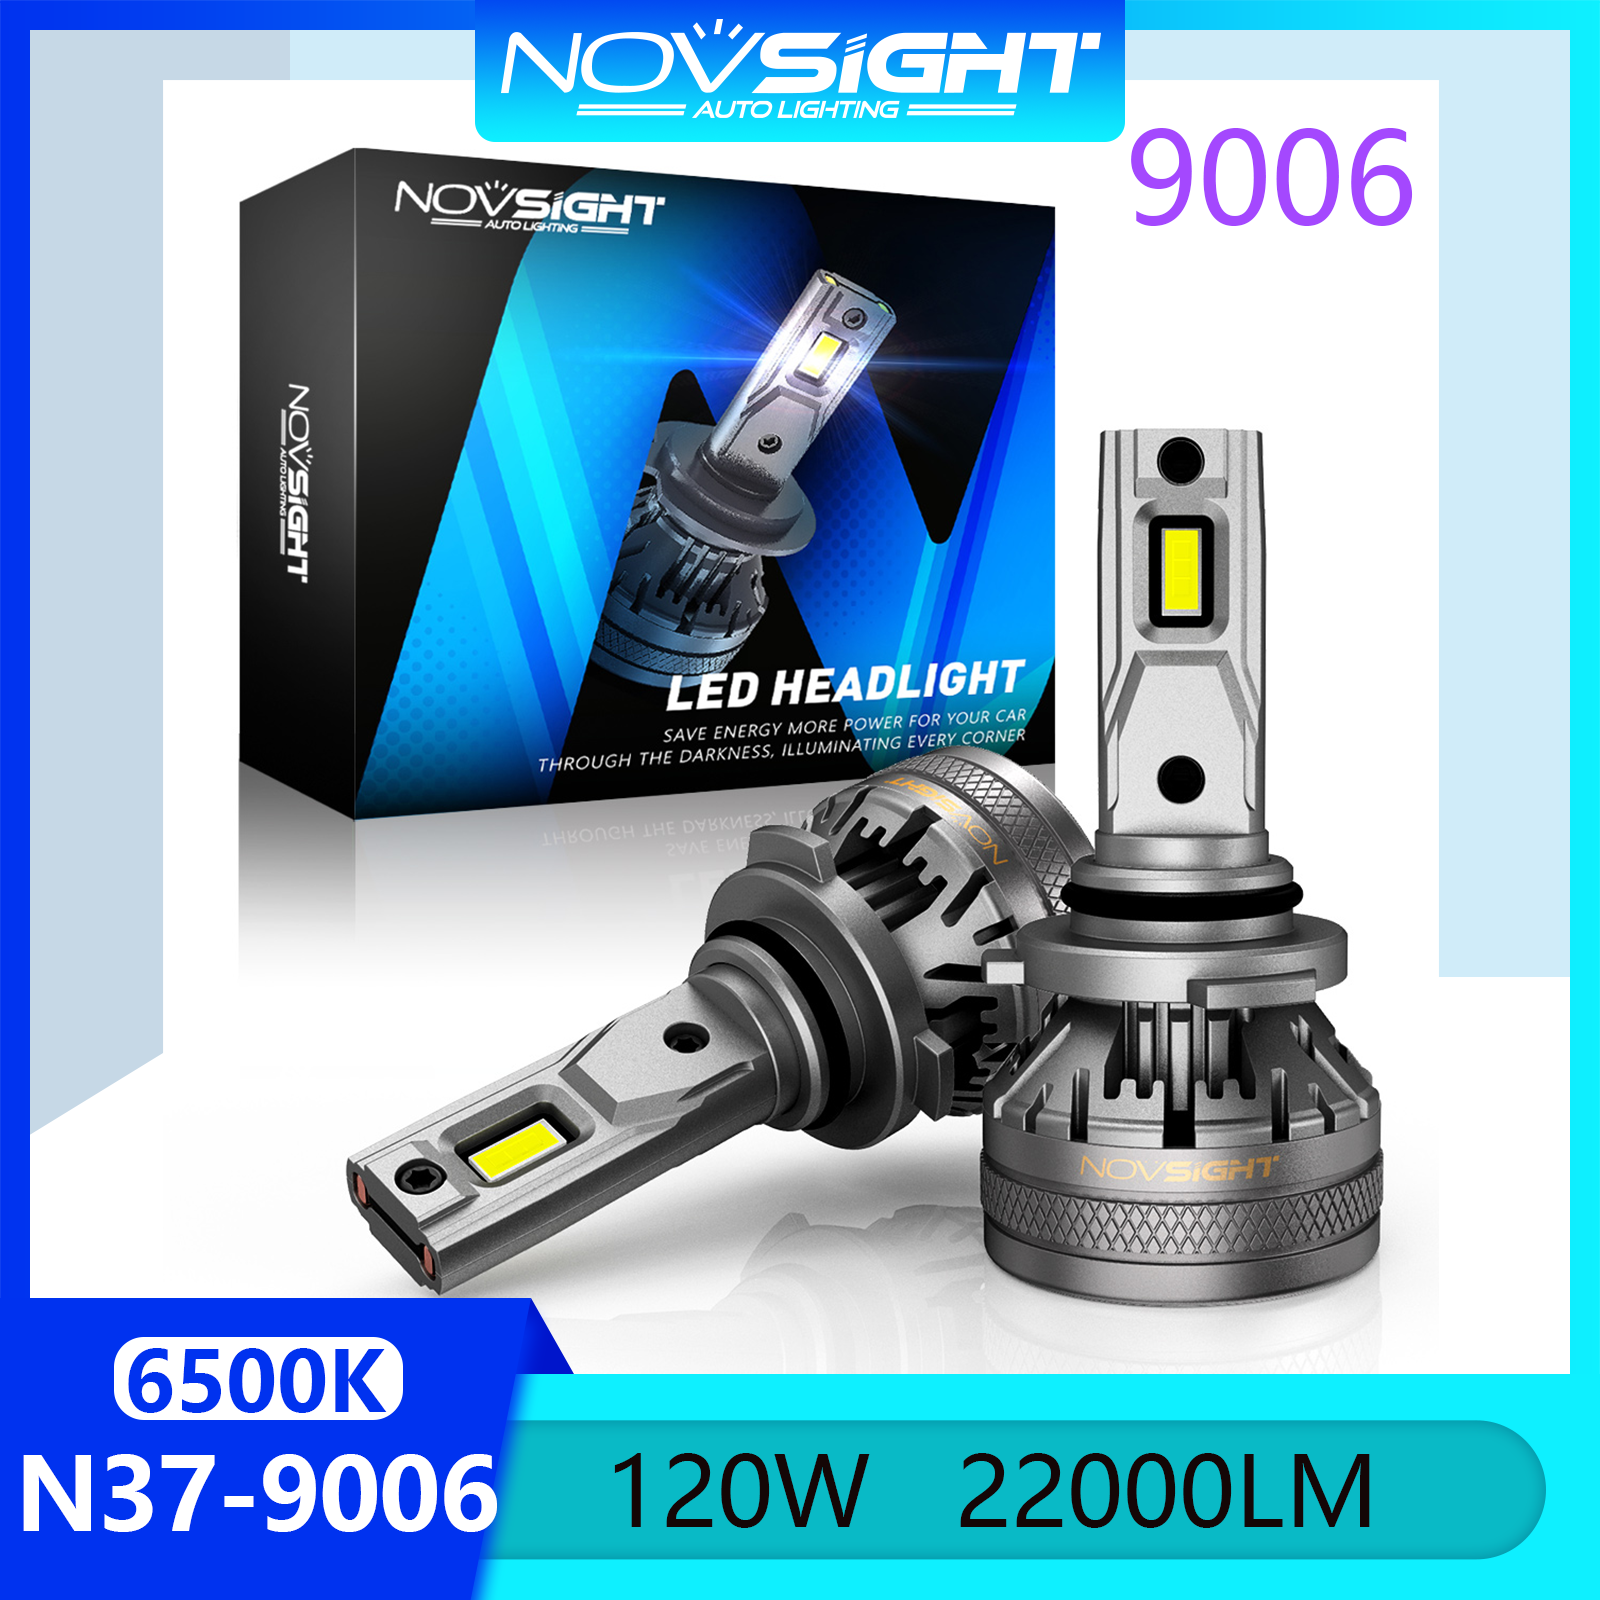 Novsight N37 6500K Đèn xe LED siêu sáng HB4 9006 Bộ đèn pha Led chùm đèn pha cao / chùm tia thấp Đèn sương mù 120W 22000LM Cắm và chạy Còn hàng 1 cặp 2 miếng Bảo hành 2 năm Miễn phí vận chuyển